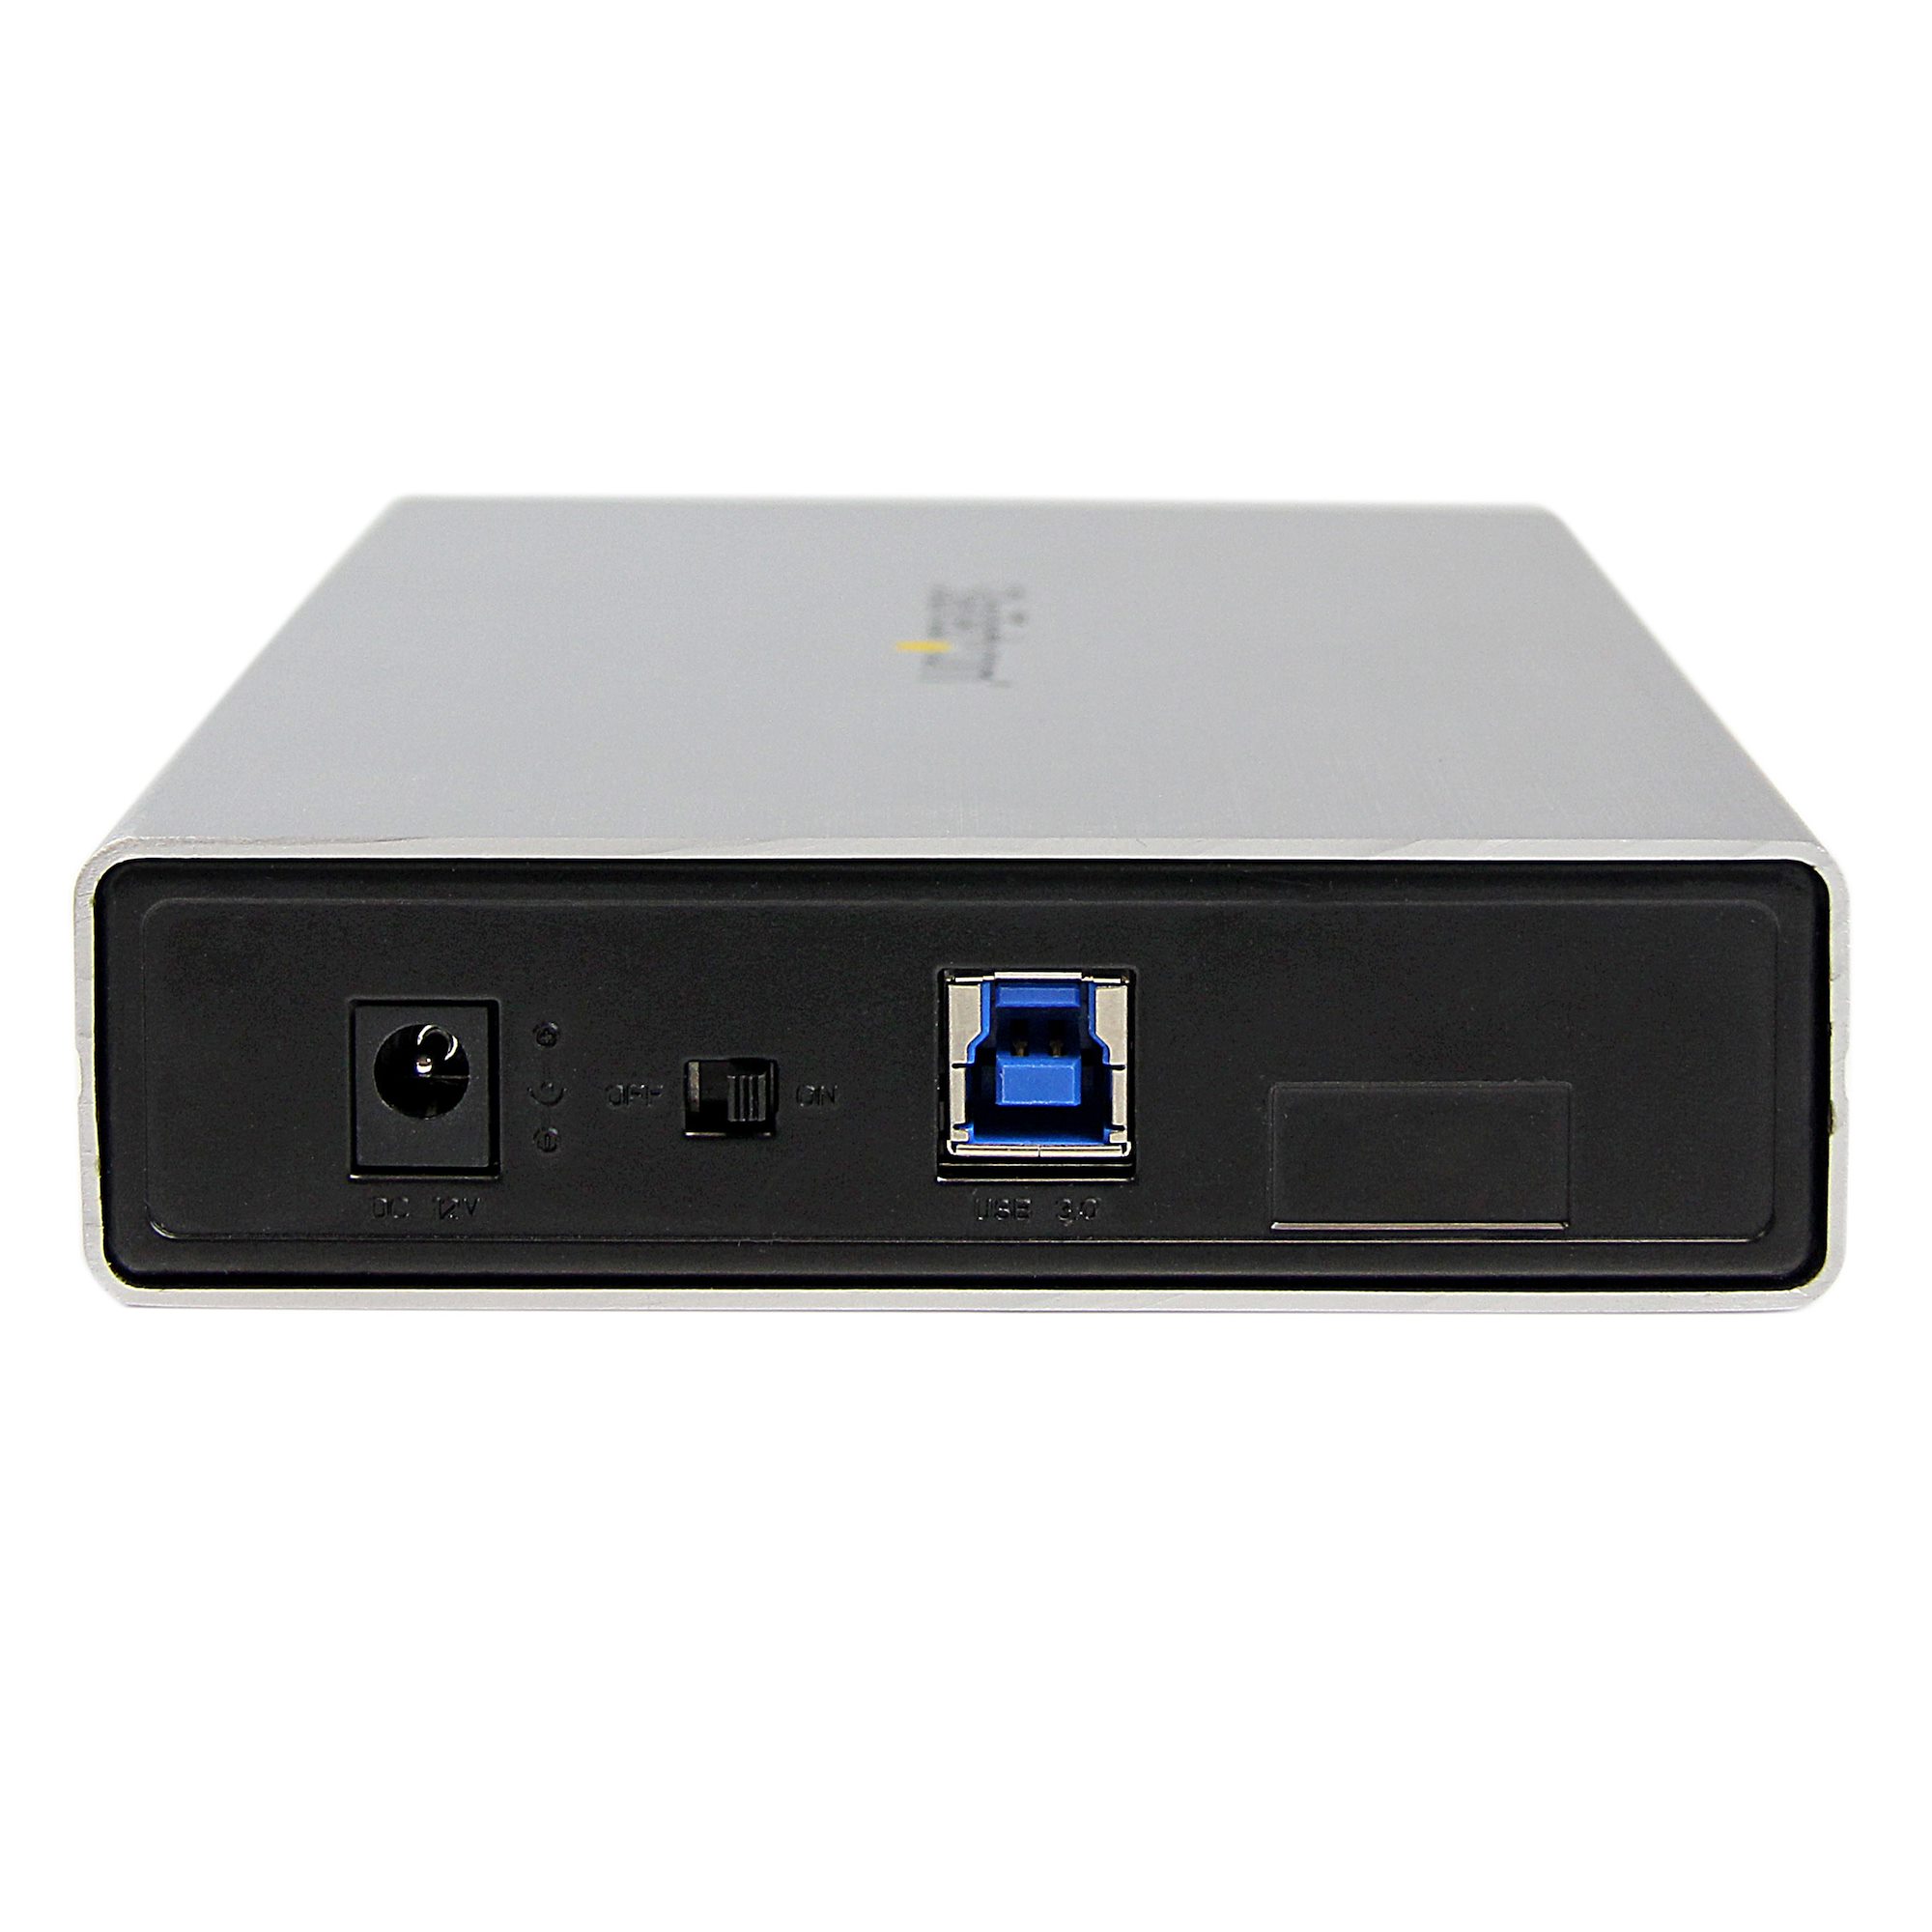 外付け3.5インチHDDケース シルバー USB3.0接続SATA 3.0対応ハードディスクケース UASP対応